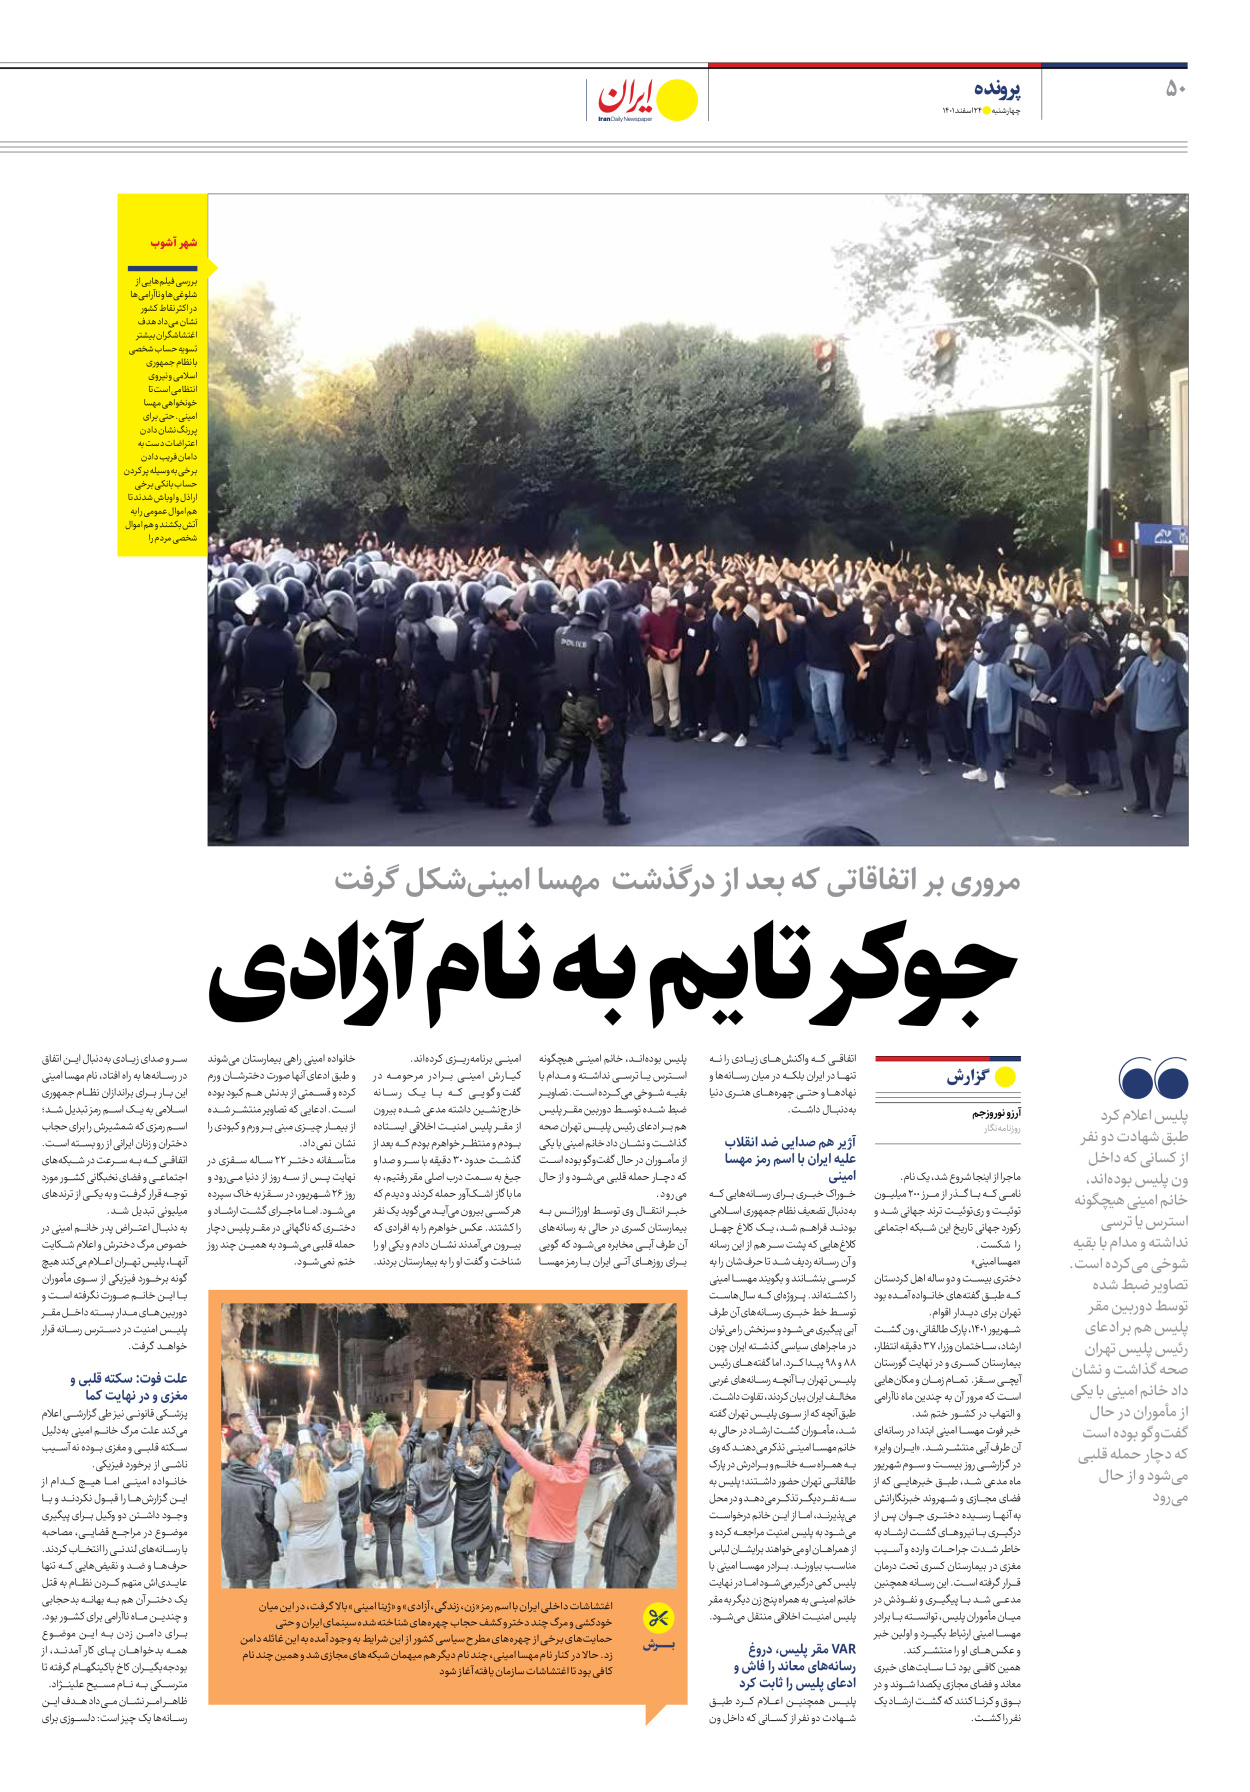 روزنامه ایران - ویژه نامه ویژه نوروز - ۲۴ اسفند ۱۴۰۱ - صفحه ۵۰